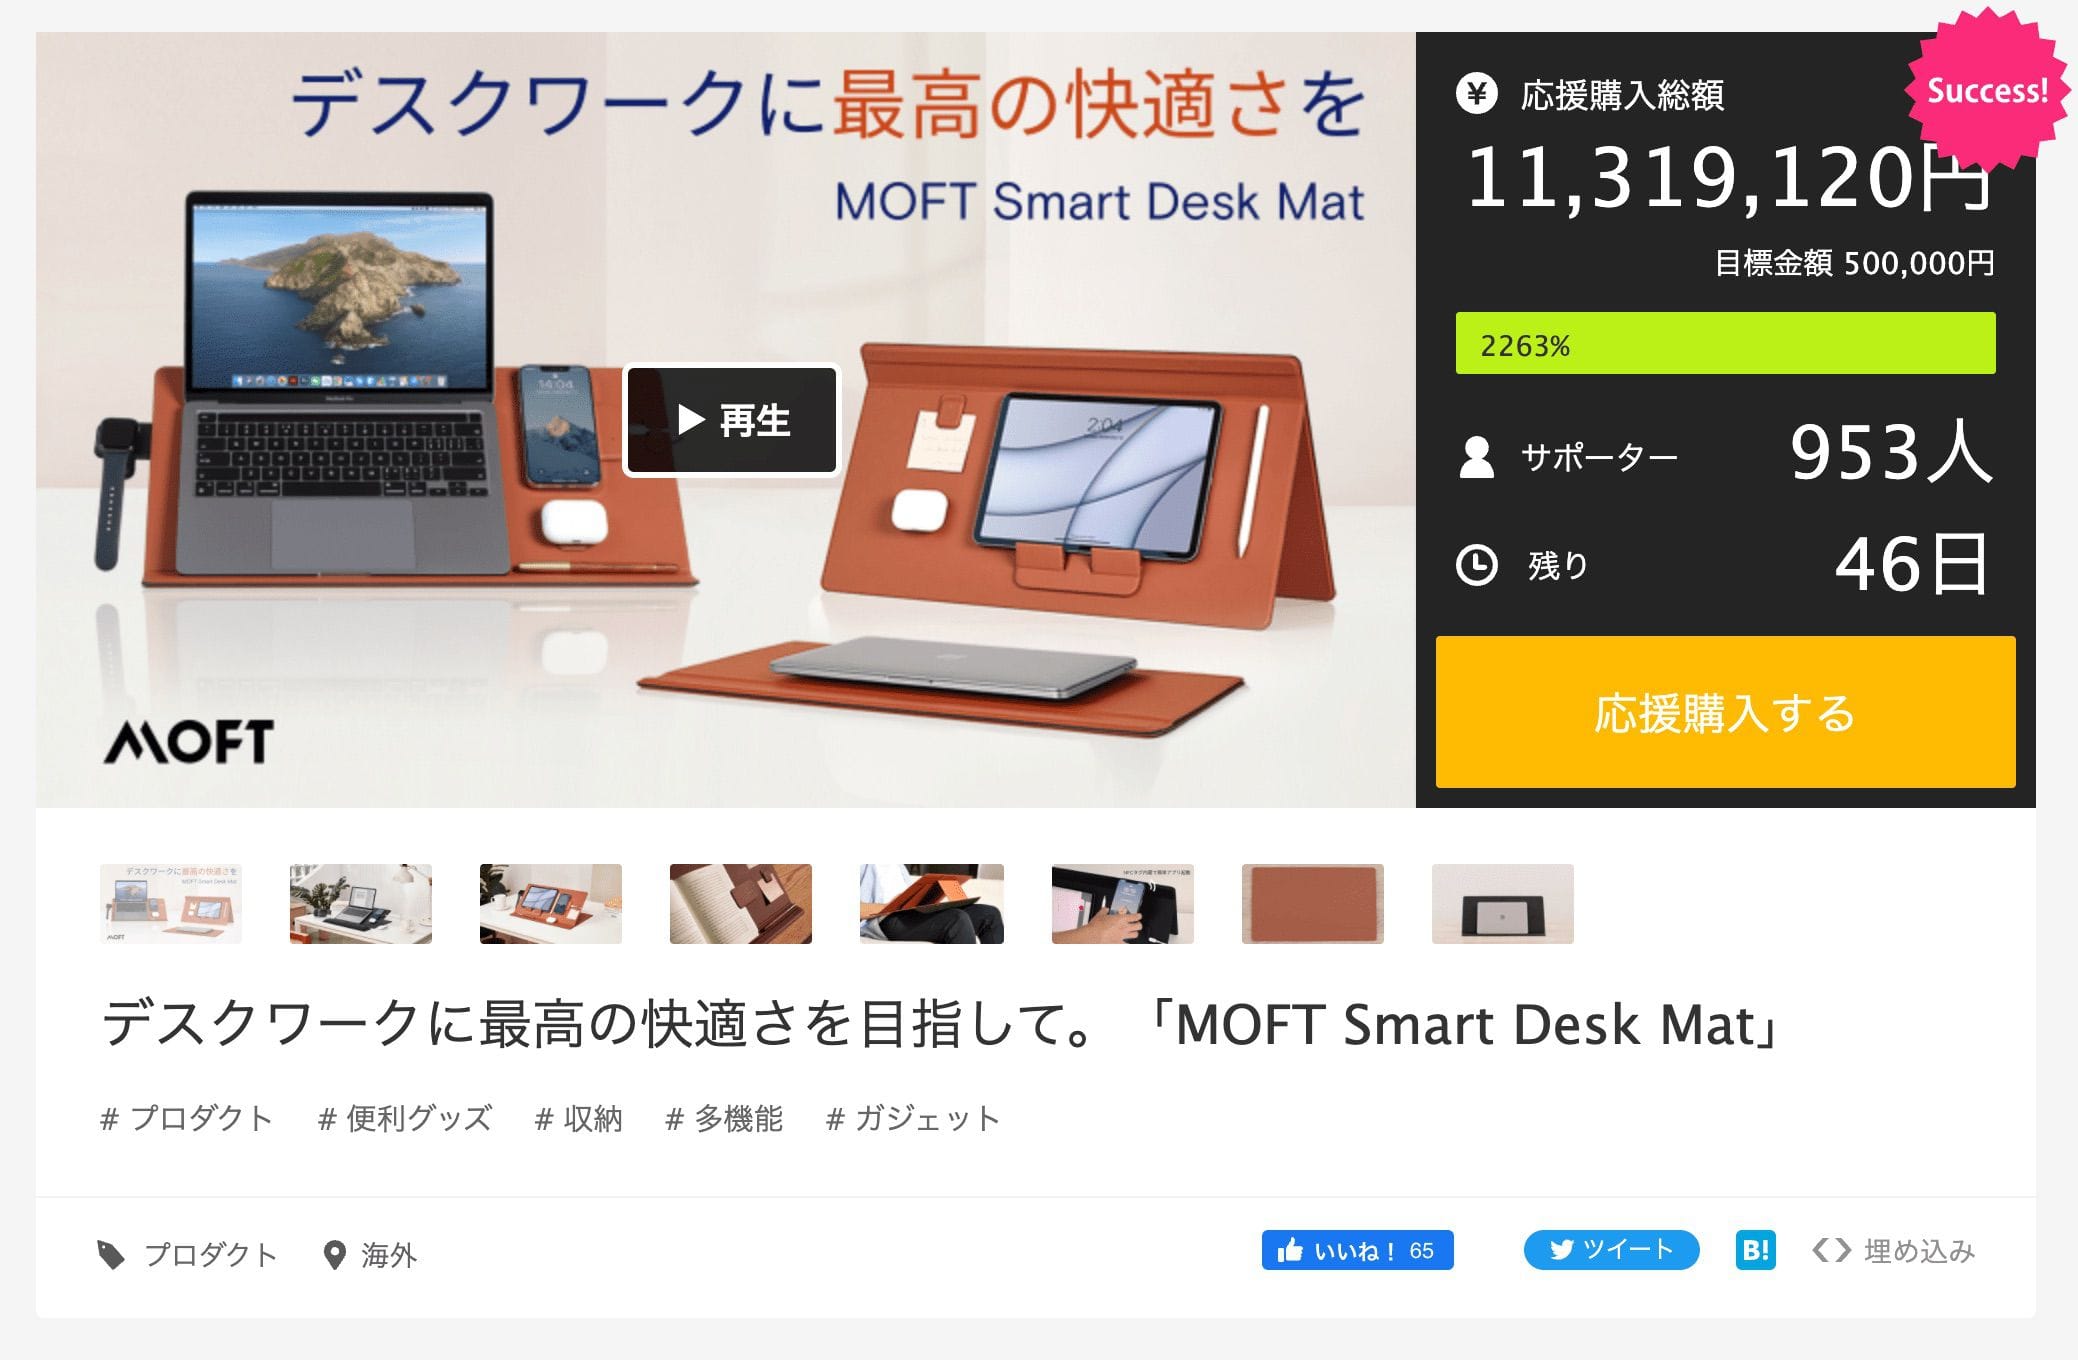 MAKUAKEでクラウドファンディング中のMOFT Smart Desk Mat